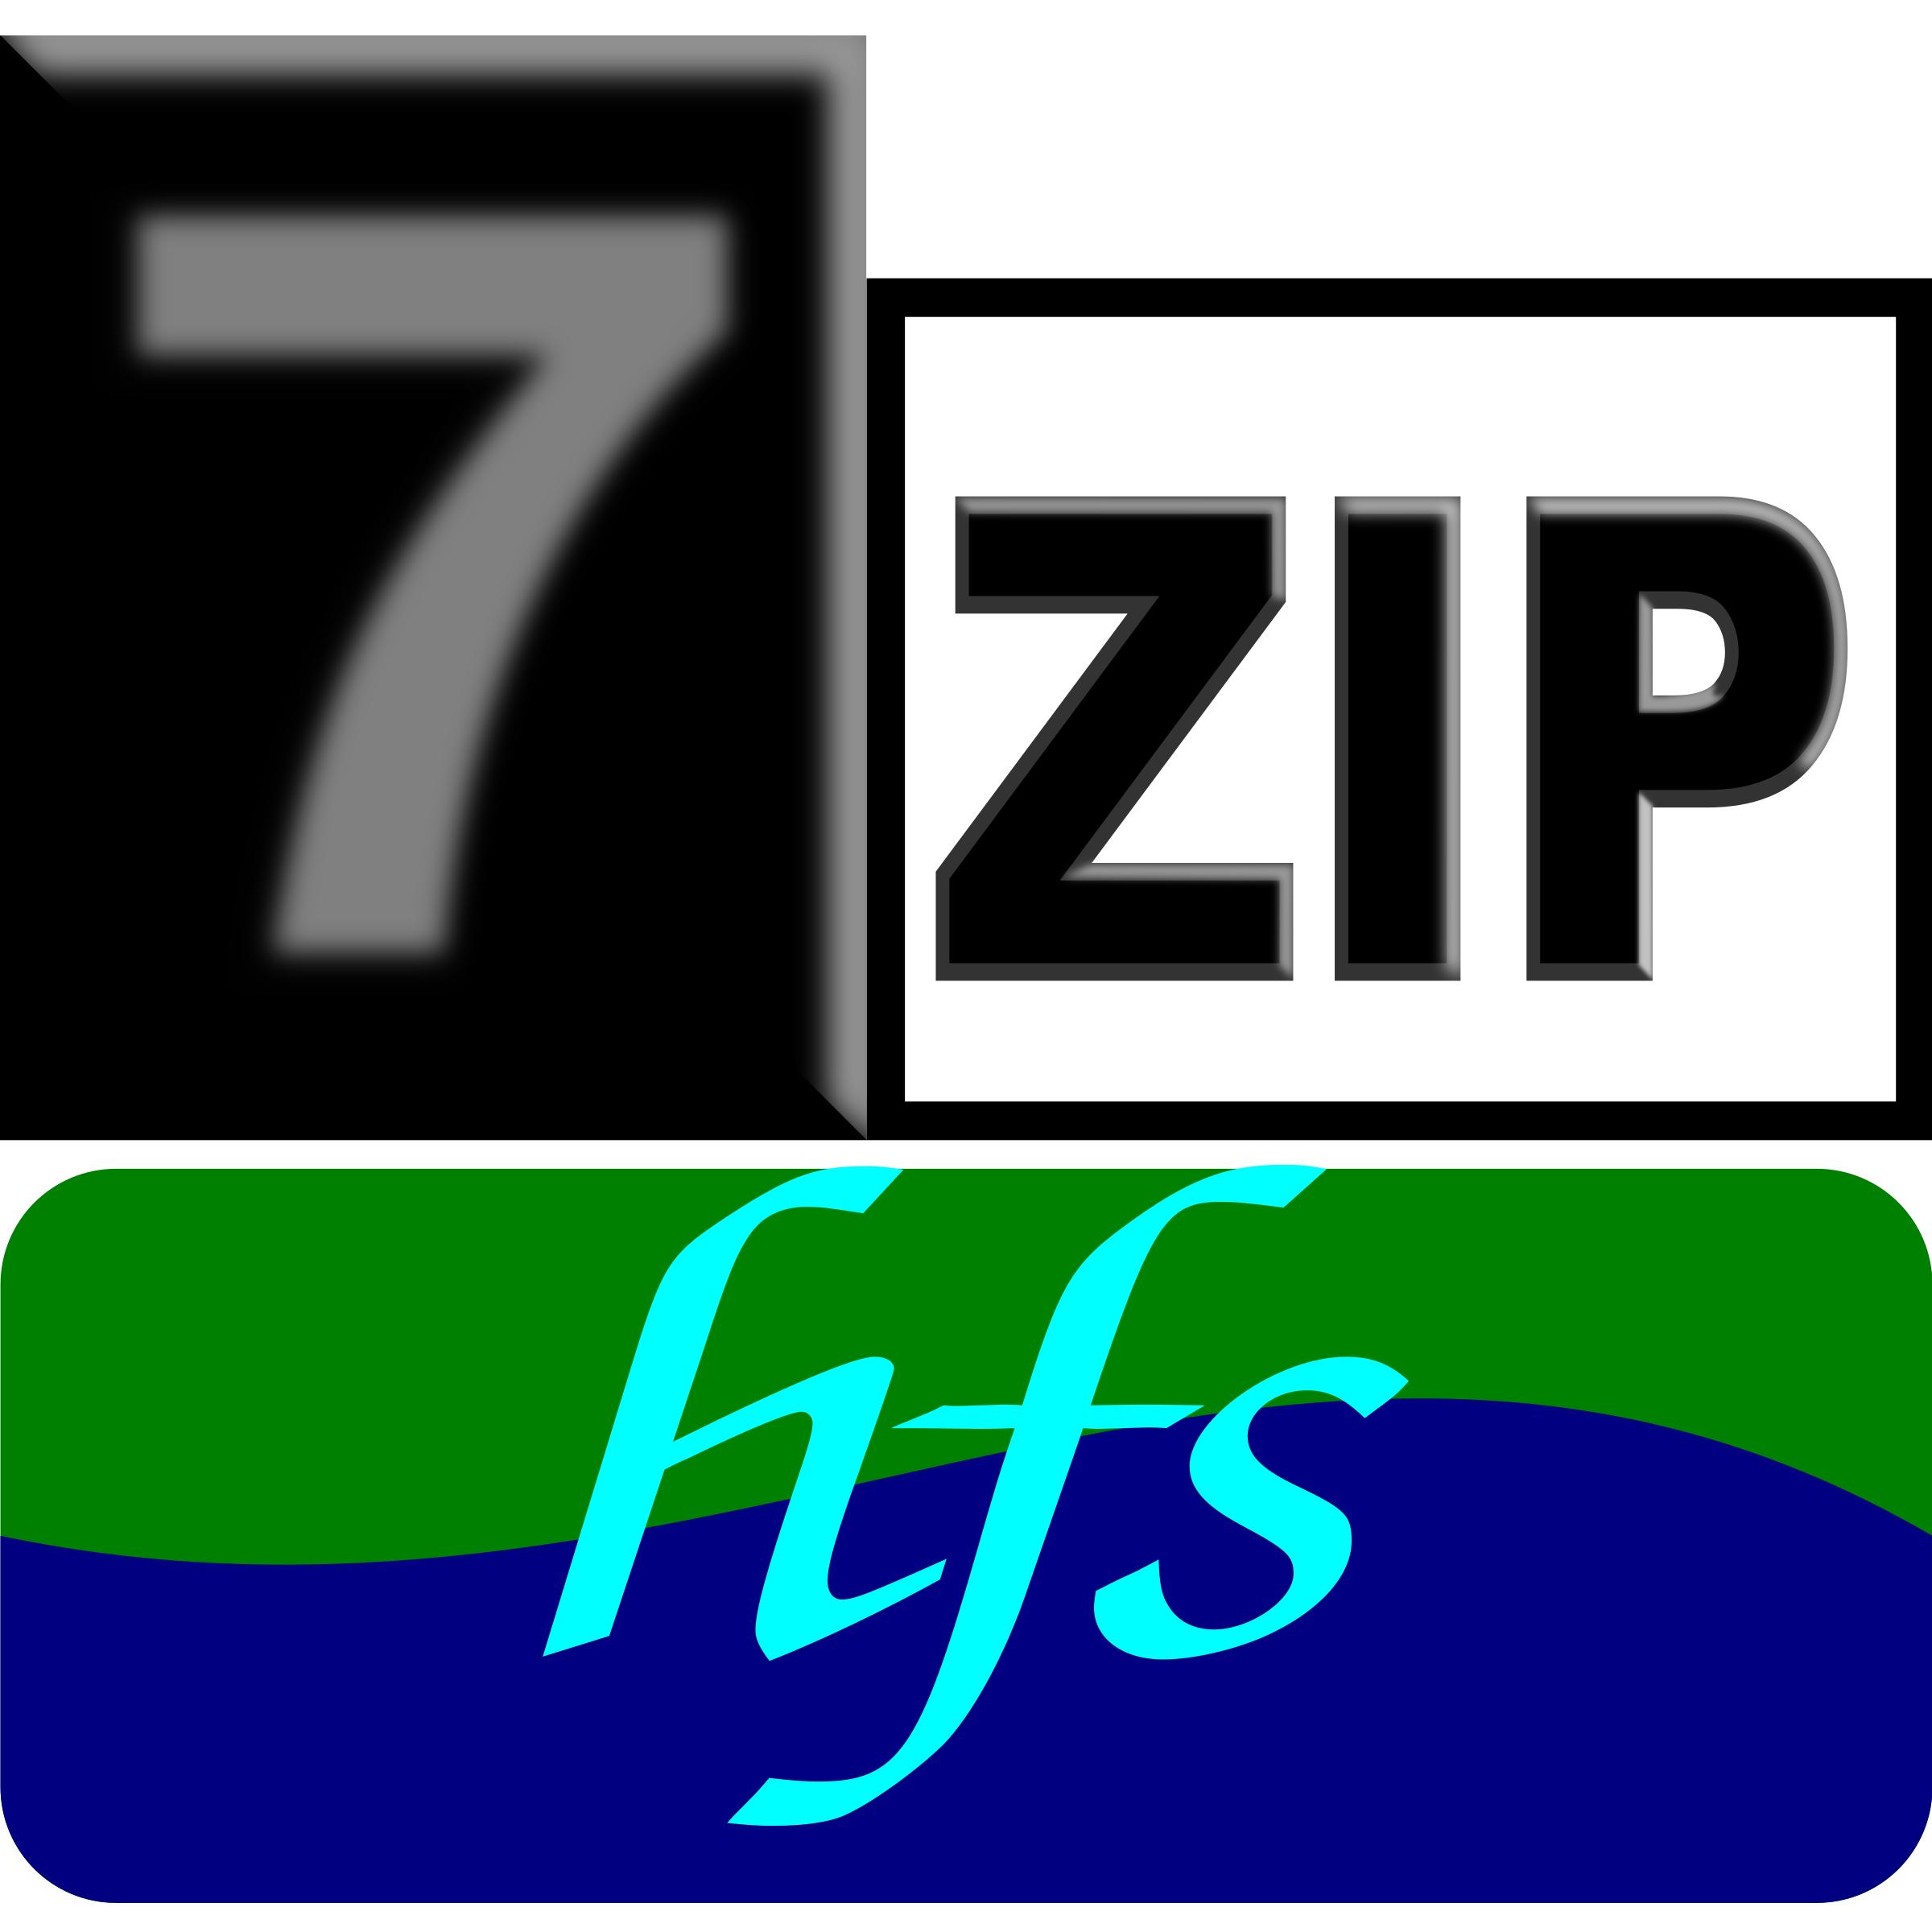 7zipClassic-hfs png